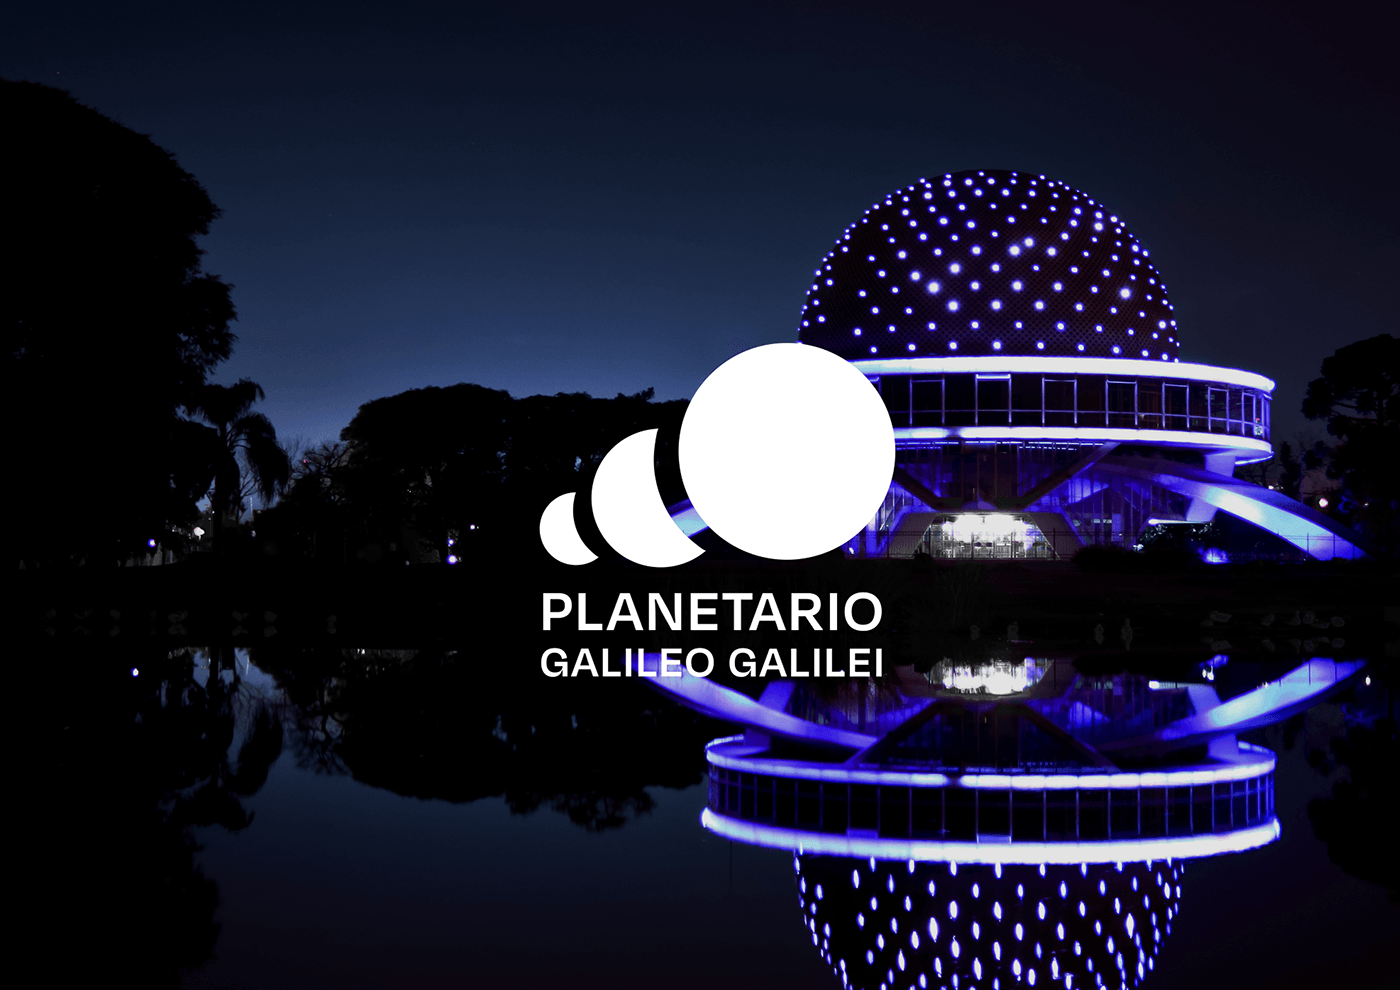 uade tesis Planetario visual identity Logo Design adobe illustrator graphic design  institucional identidadvisual